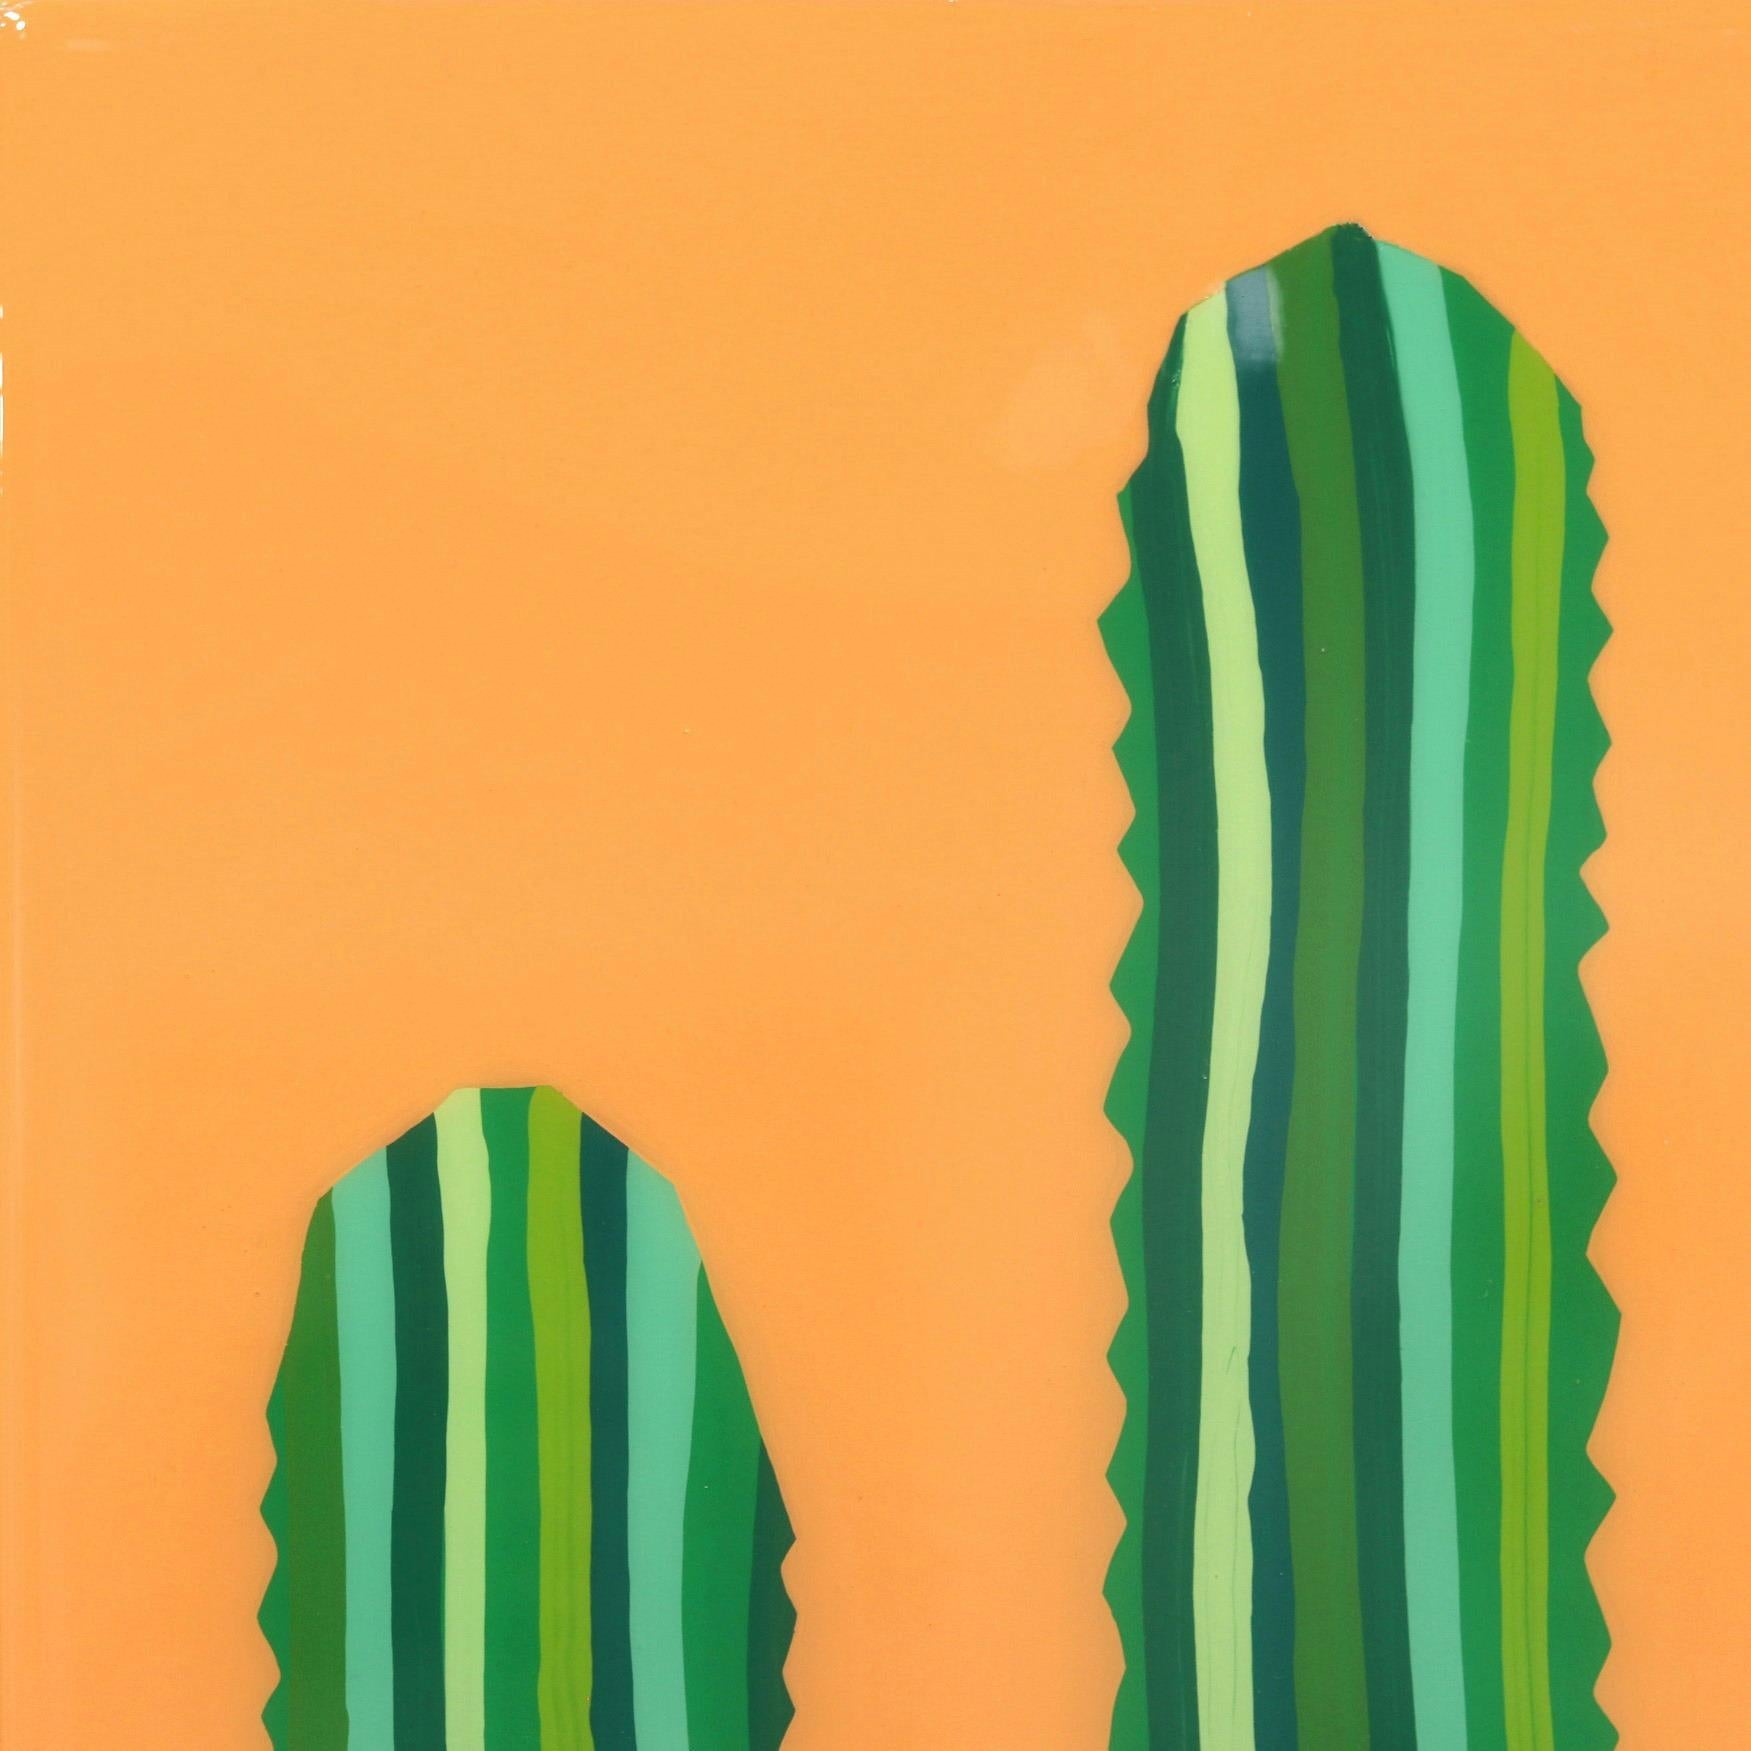 Velloso – lebhaftes orange-grünes, vom Südwesten inspiriertes Pop-Art-Kactus-Gemälde (Amerikanische Moderne), Painting, von Will Beger